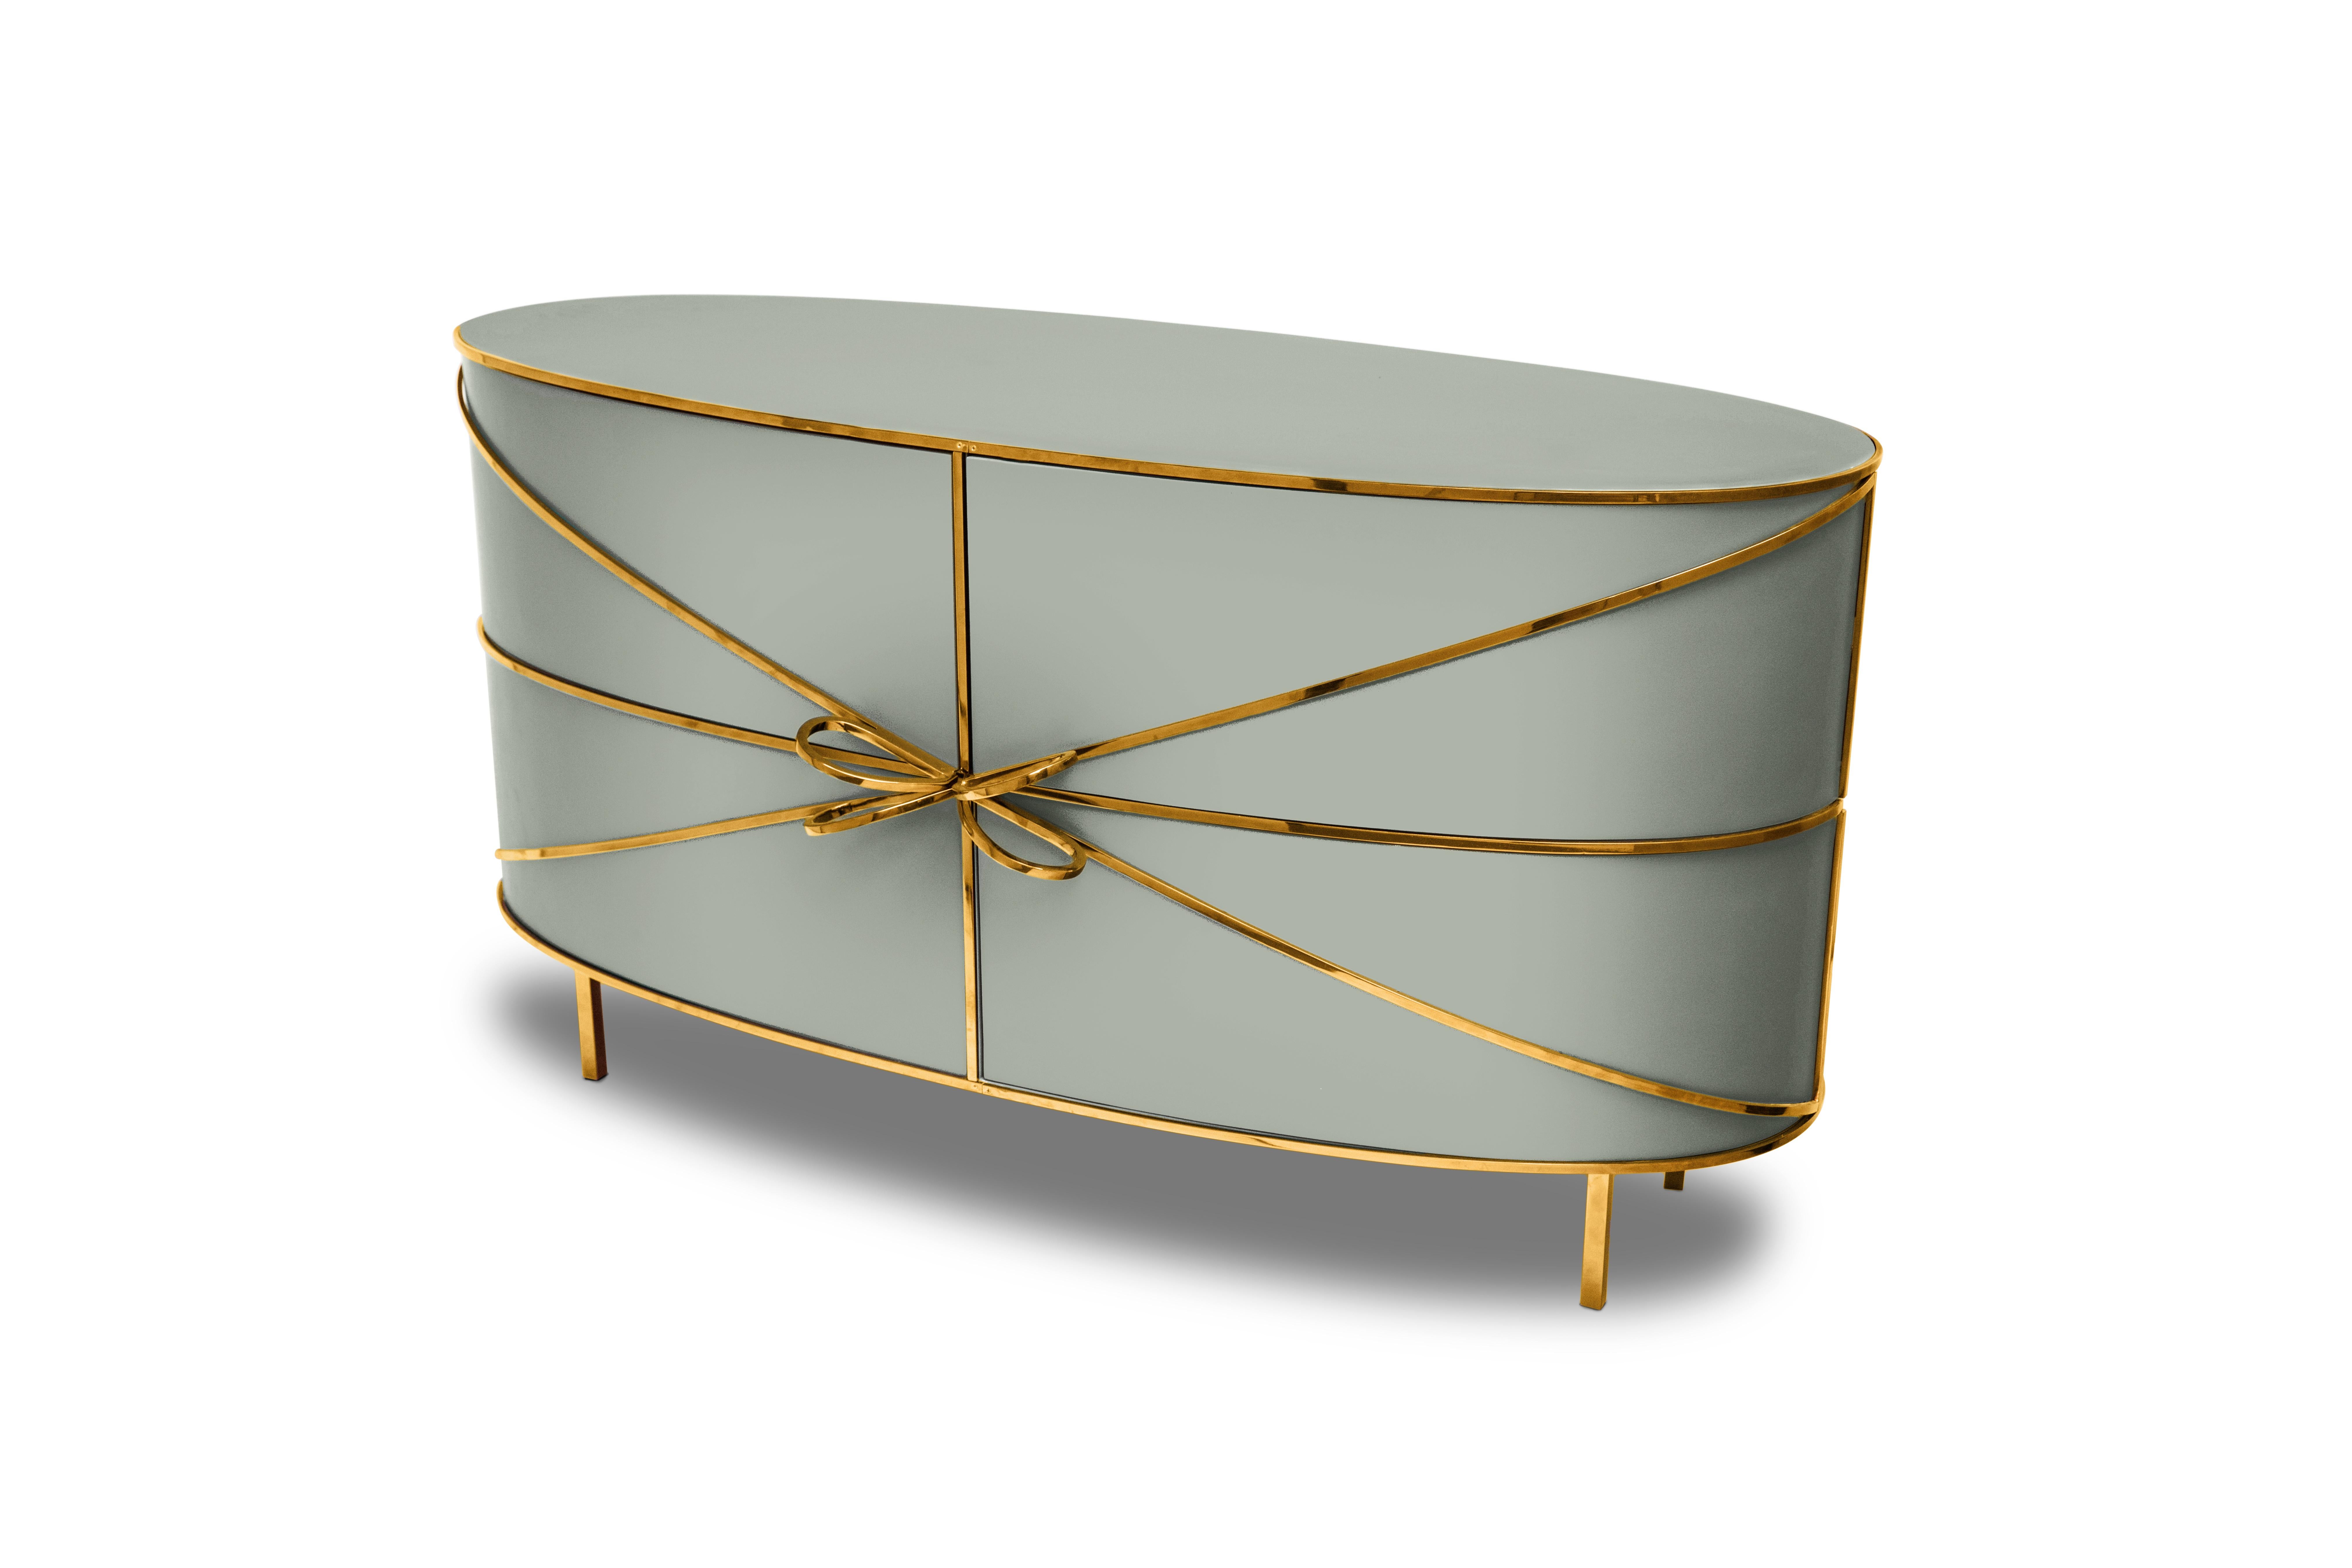 88 Secrets Sideboard Gray with Gold Trims de Nika Zupanc est un meuble gris chic aux lignes sensuelles et féminines avec de luxueuses garnitures en métal doré. Une pièce maîtresse dans tout espace intérieur !

Nika Zupanc, designer slovène de renom,